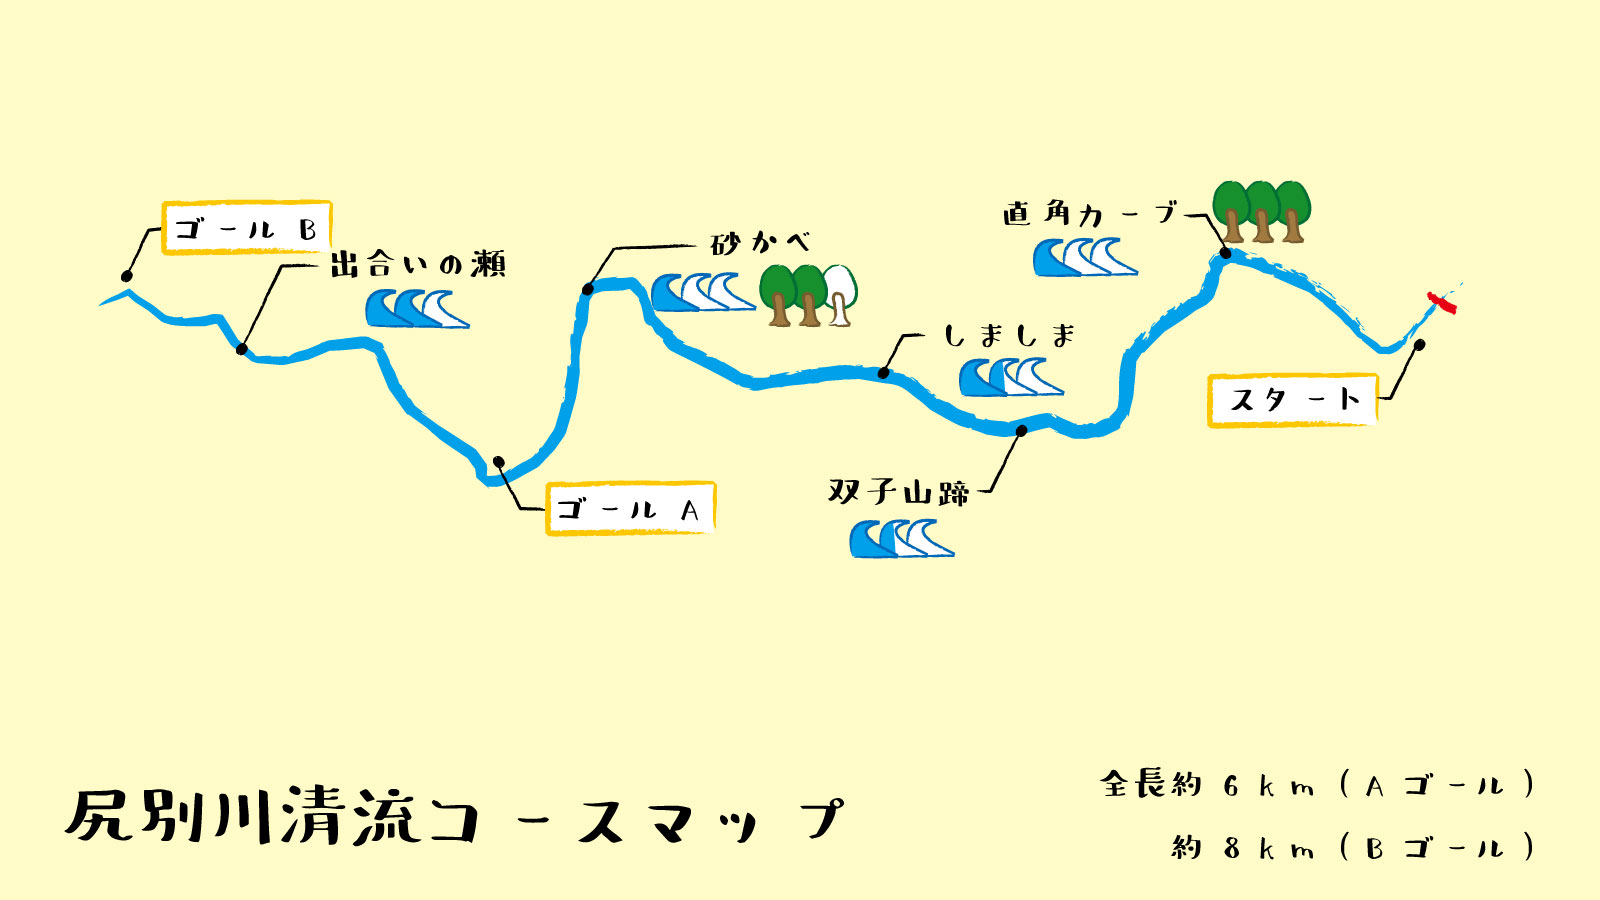 niseko-rafting-course-map1